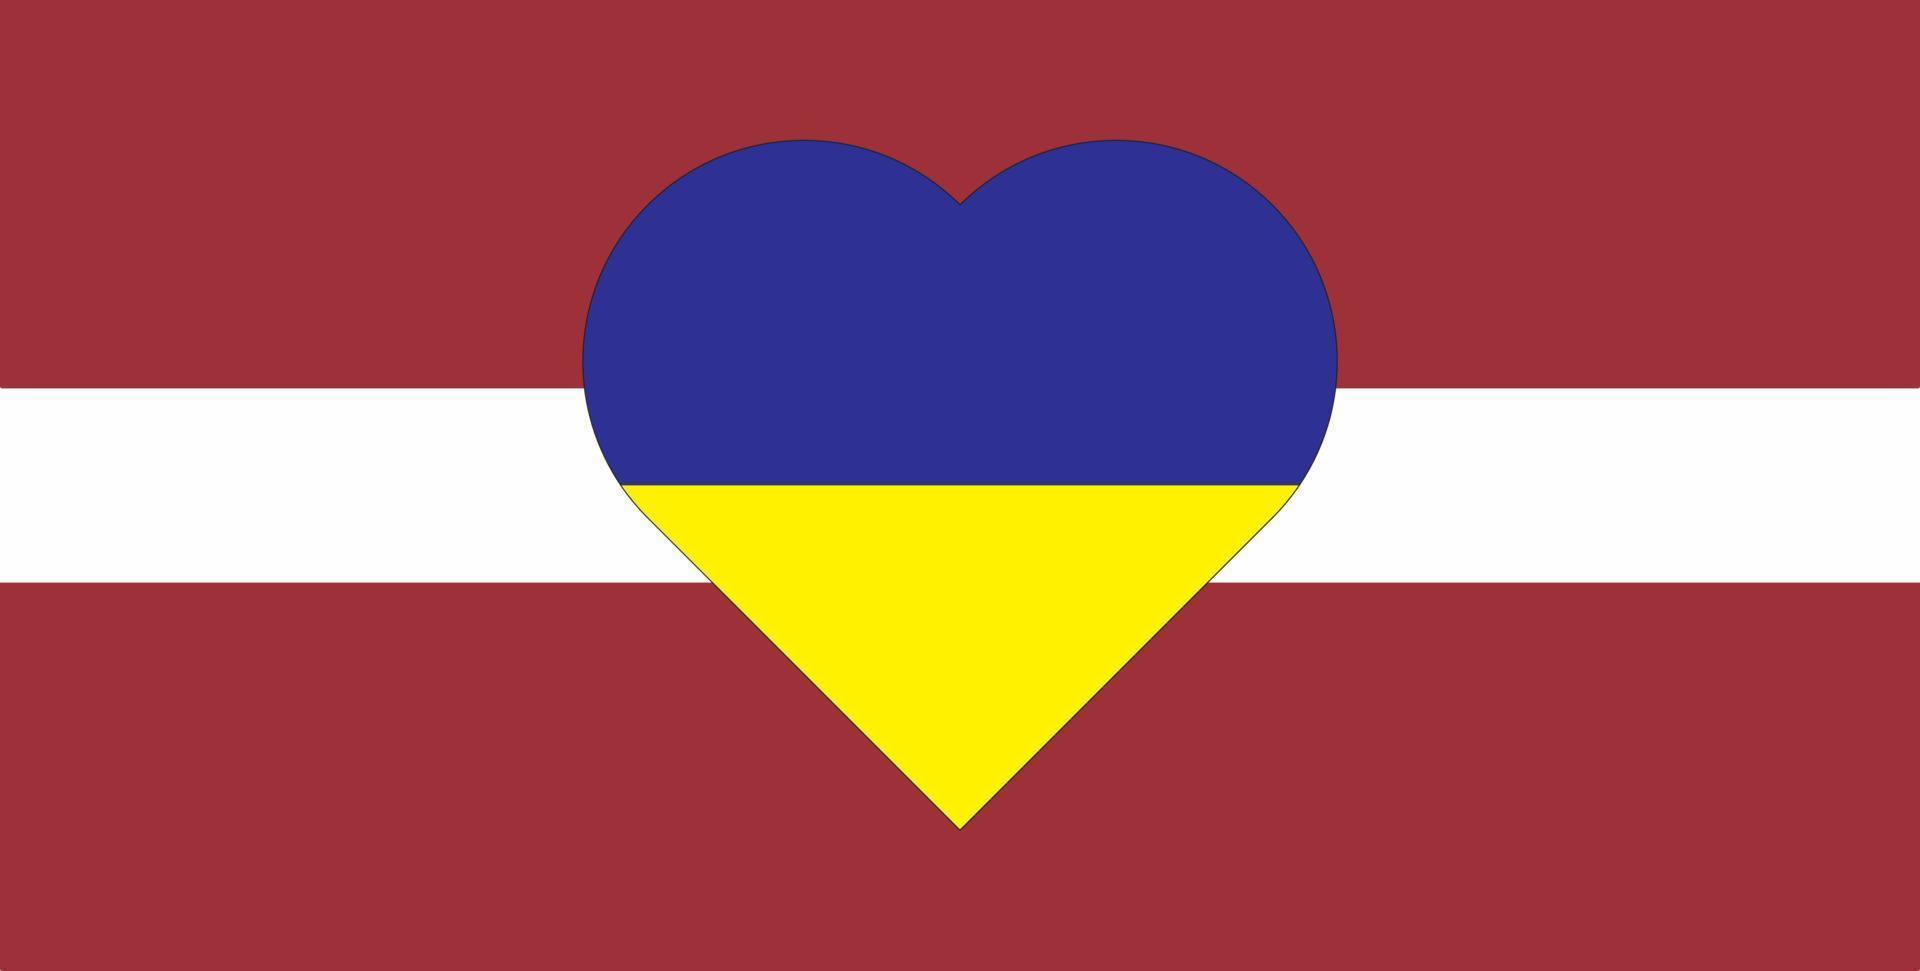 um coração pintado nas cores da bandeira da ucrânia na bandeira da letônia. ilustração de um coração azul e amarelo no símbolo nacional. vetor